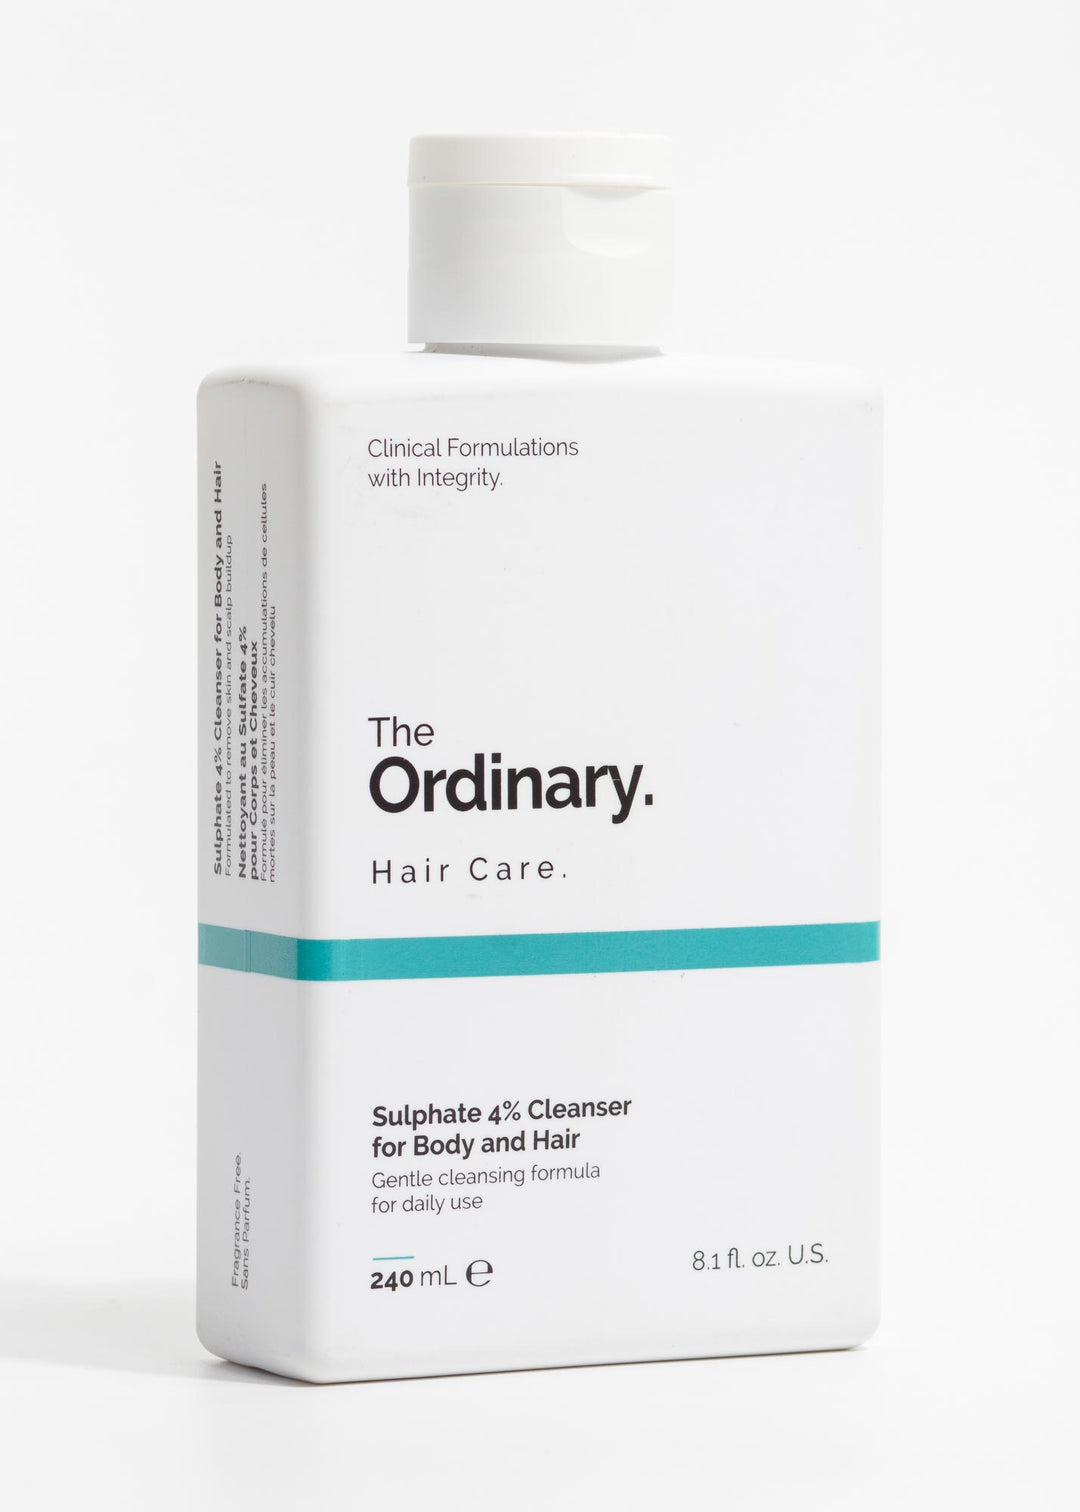 comprar the ordinary limpiador cuerpo y cabello romanamx